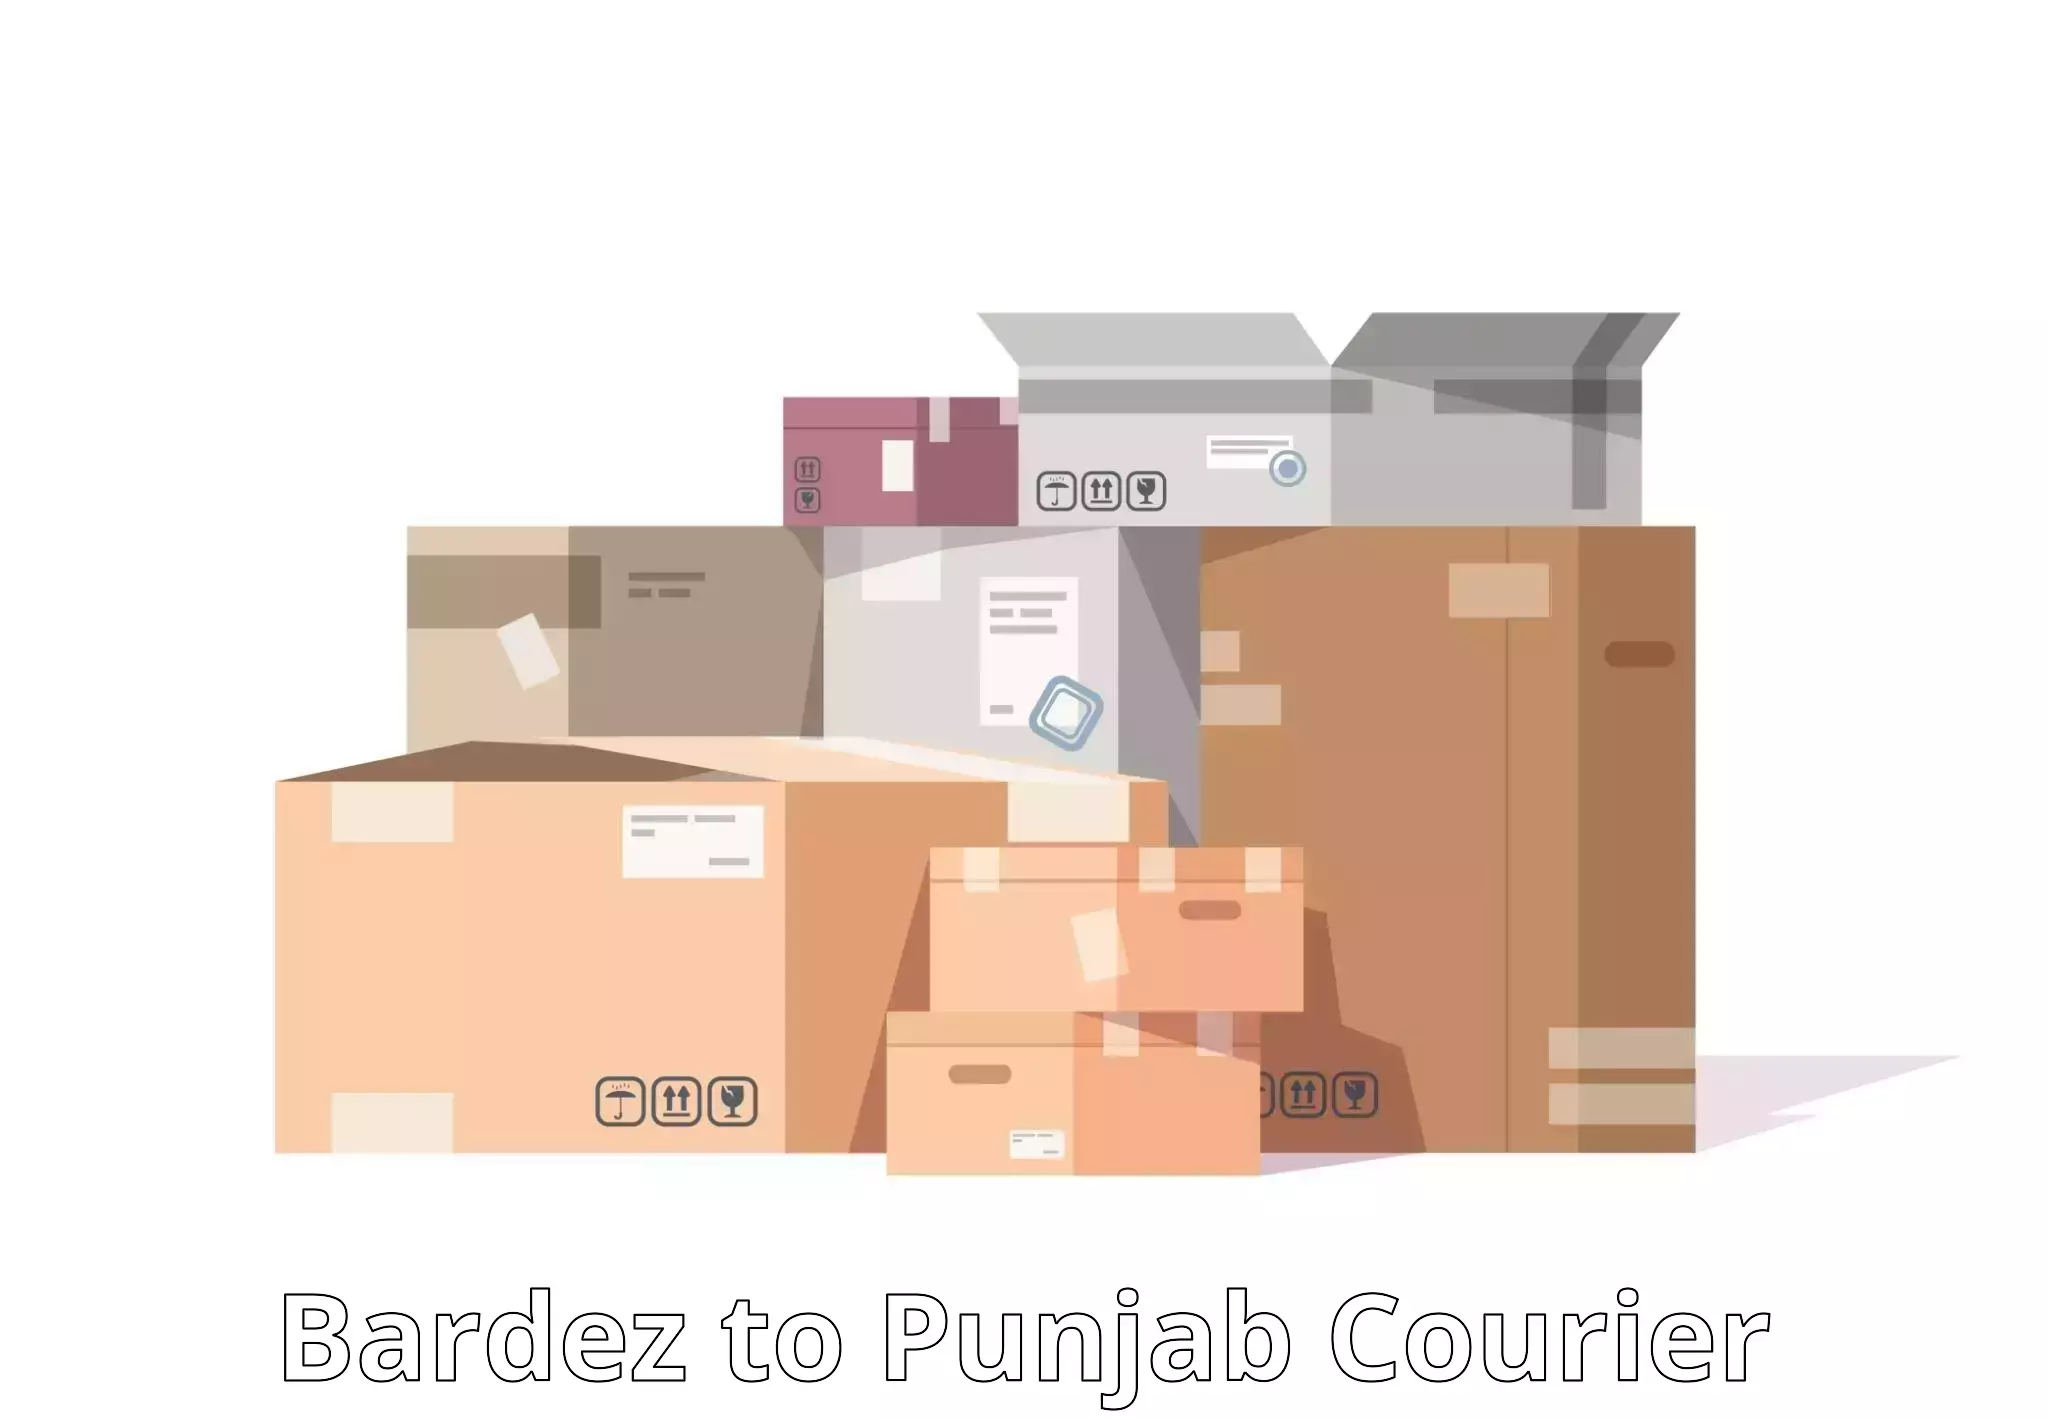 On-demand shipping options Bardez to Central University of Punjab Bathinda